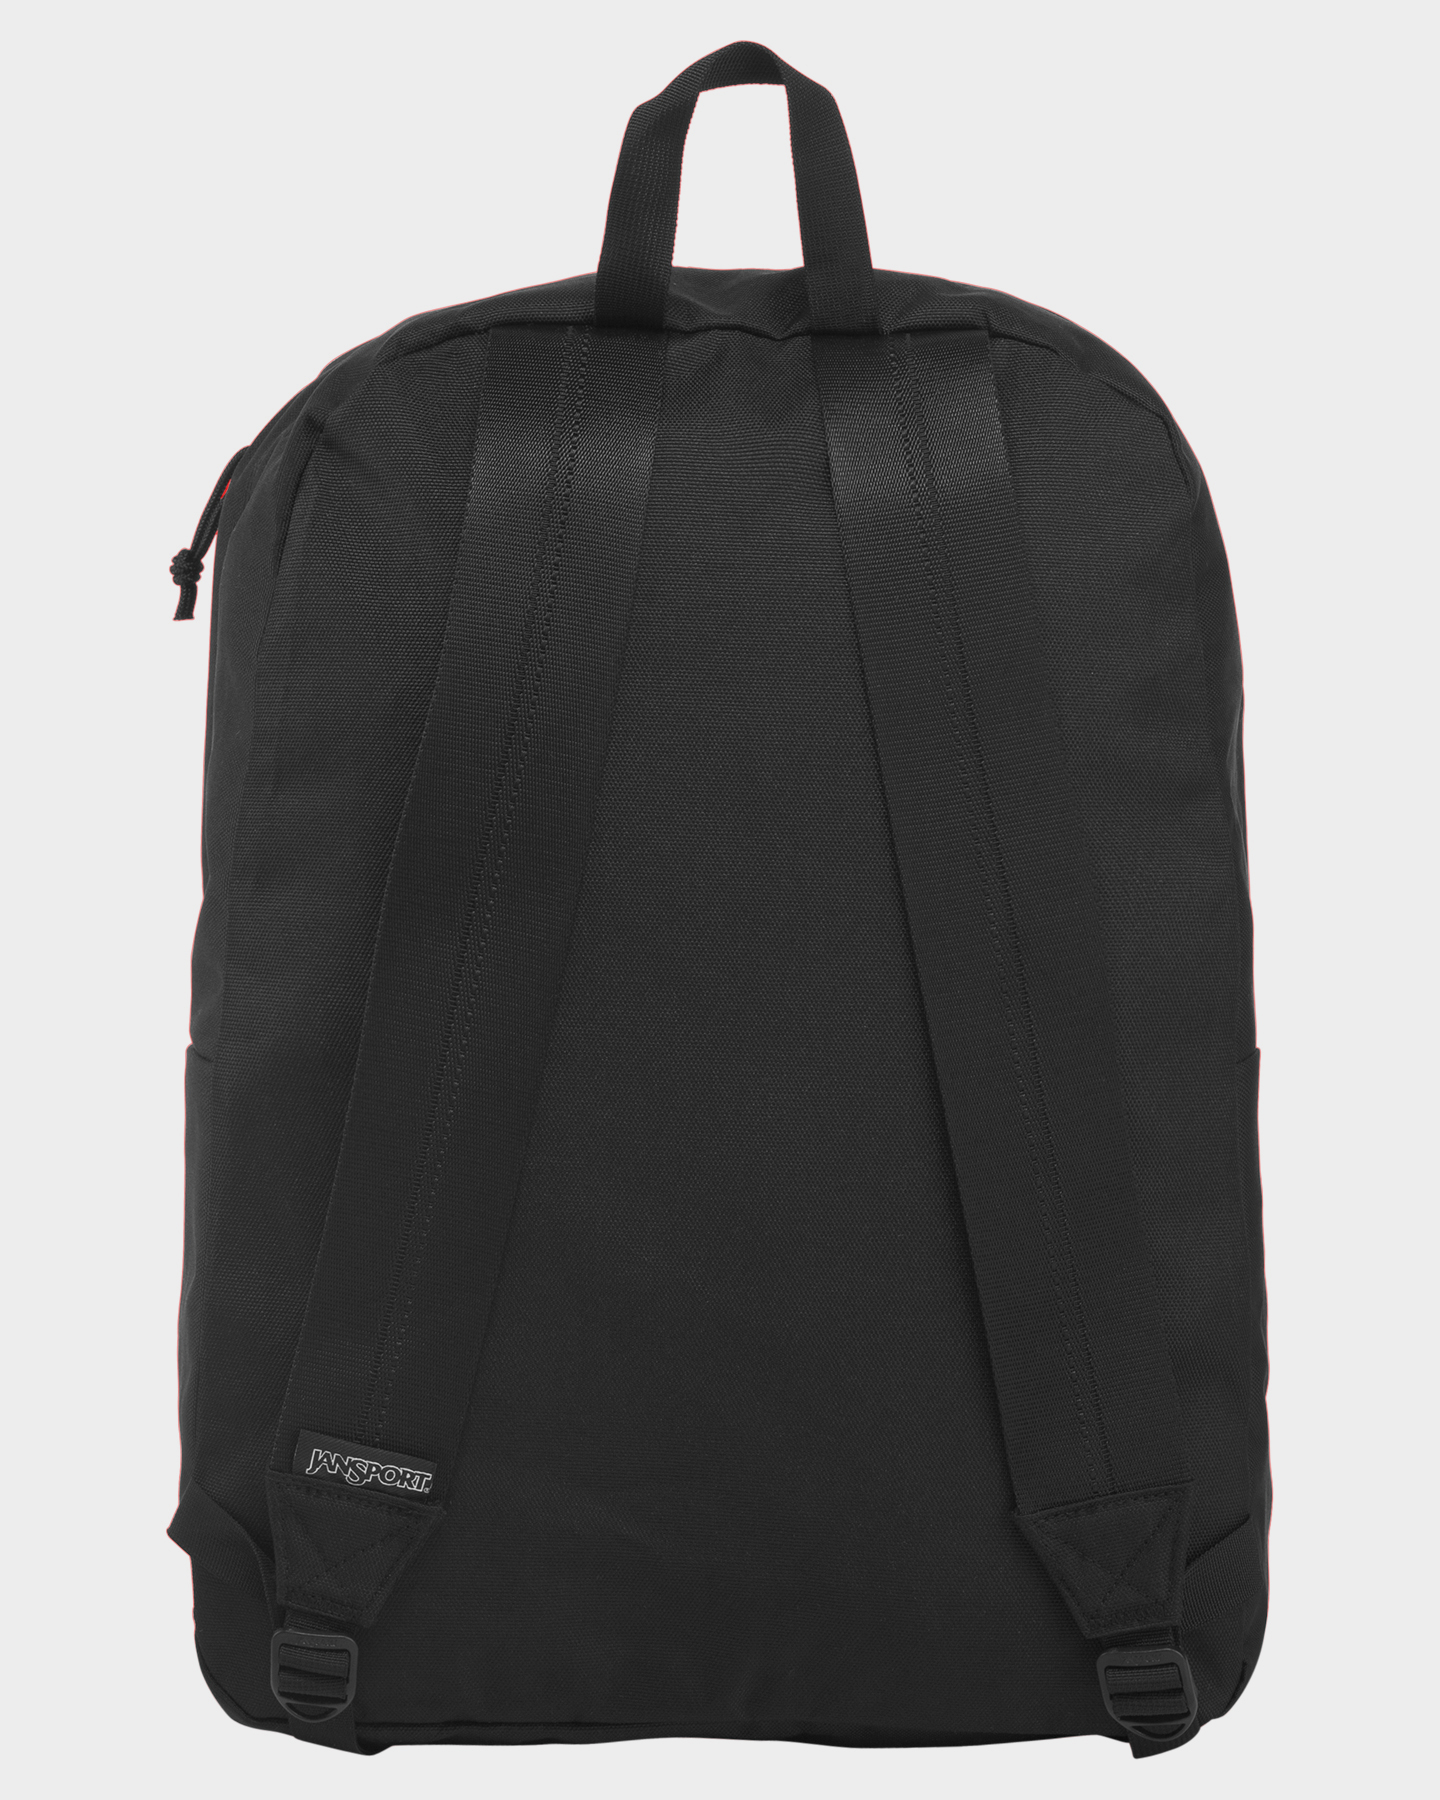 Jansport Recycled Superbreak 26L Backpack - Black | SurfStitch